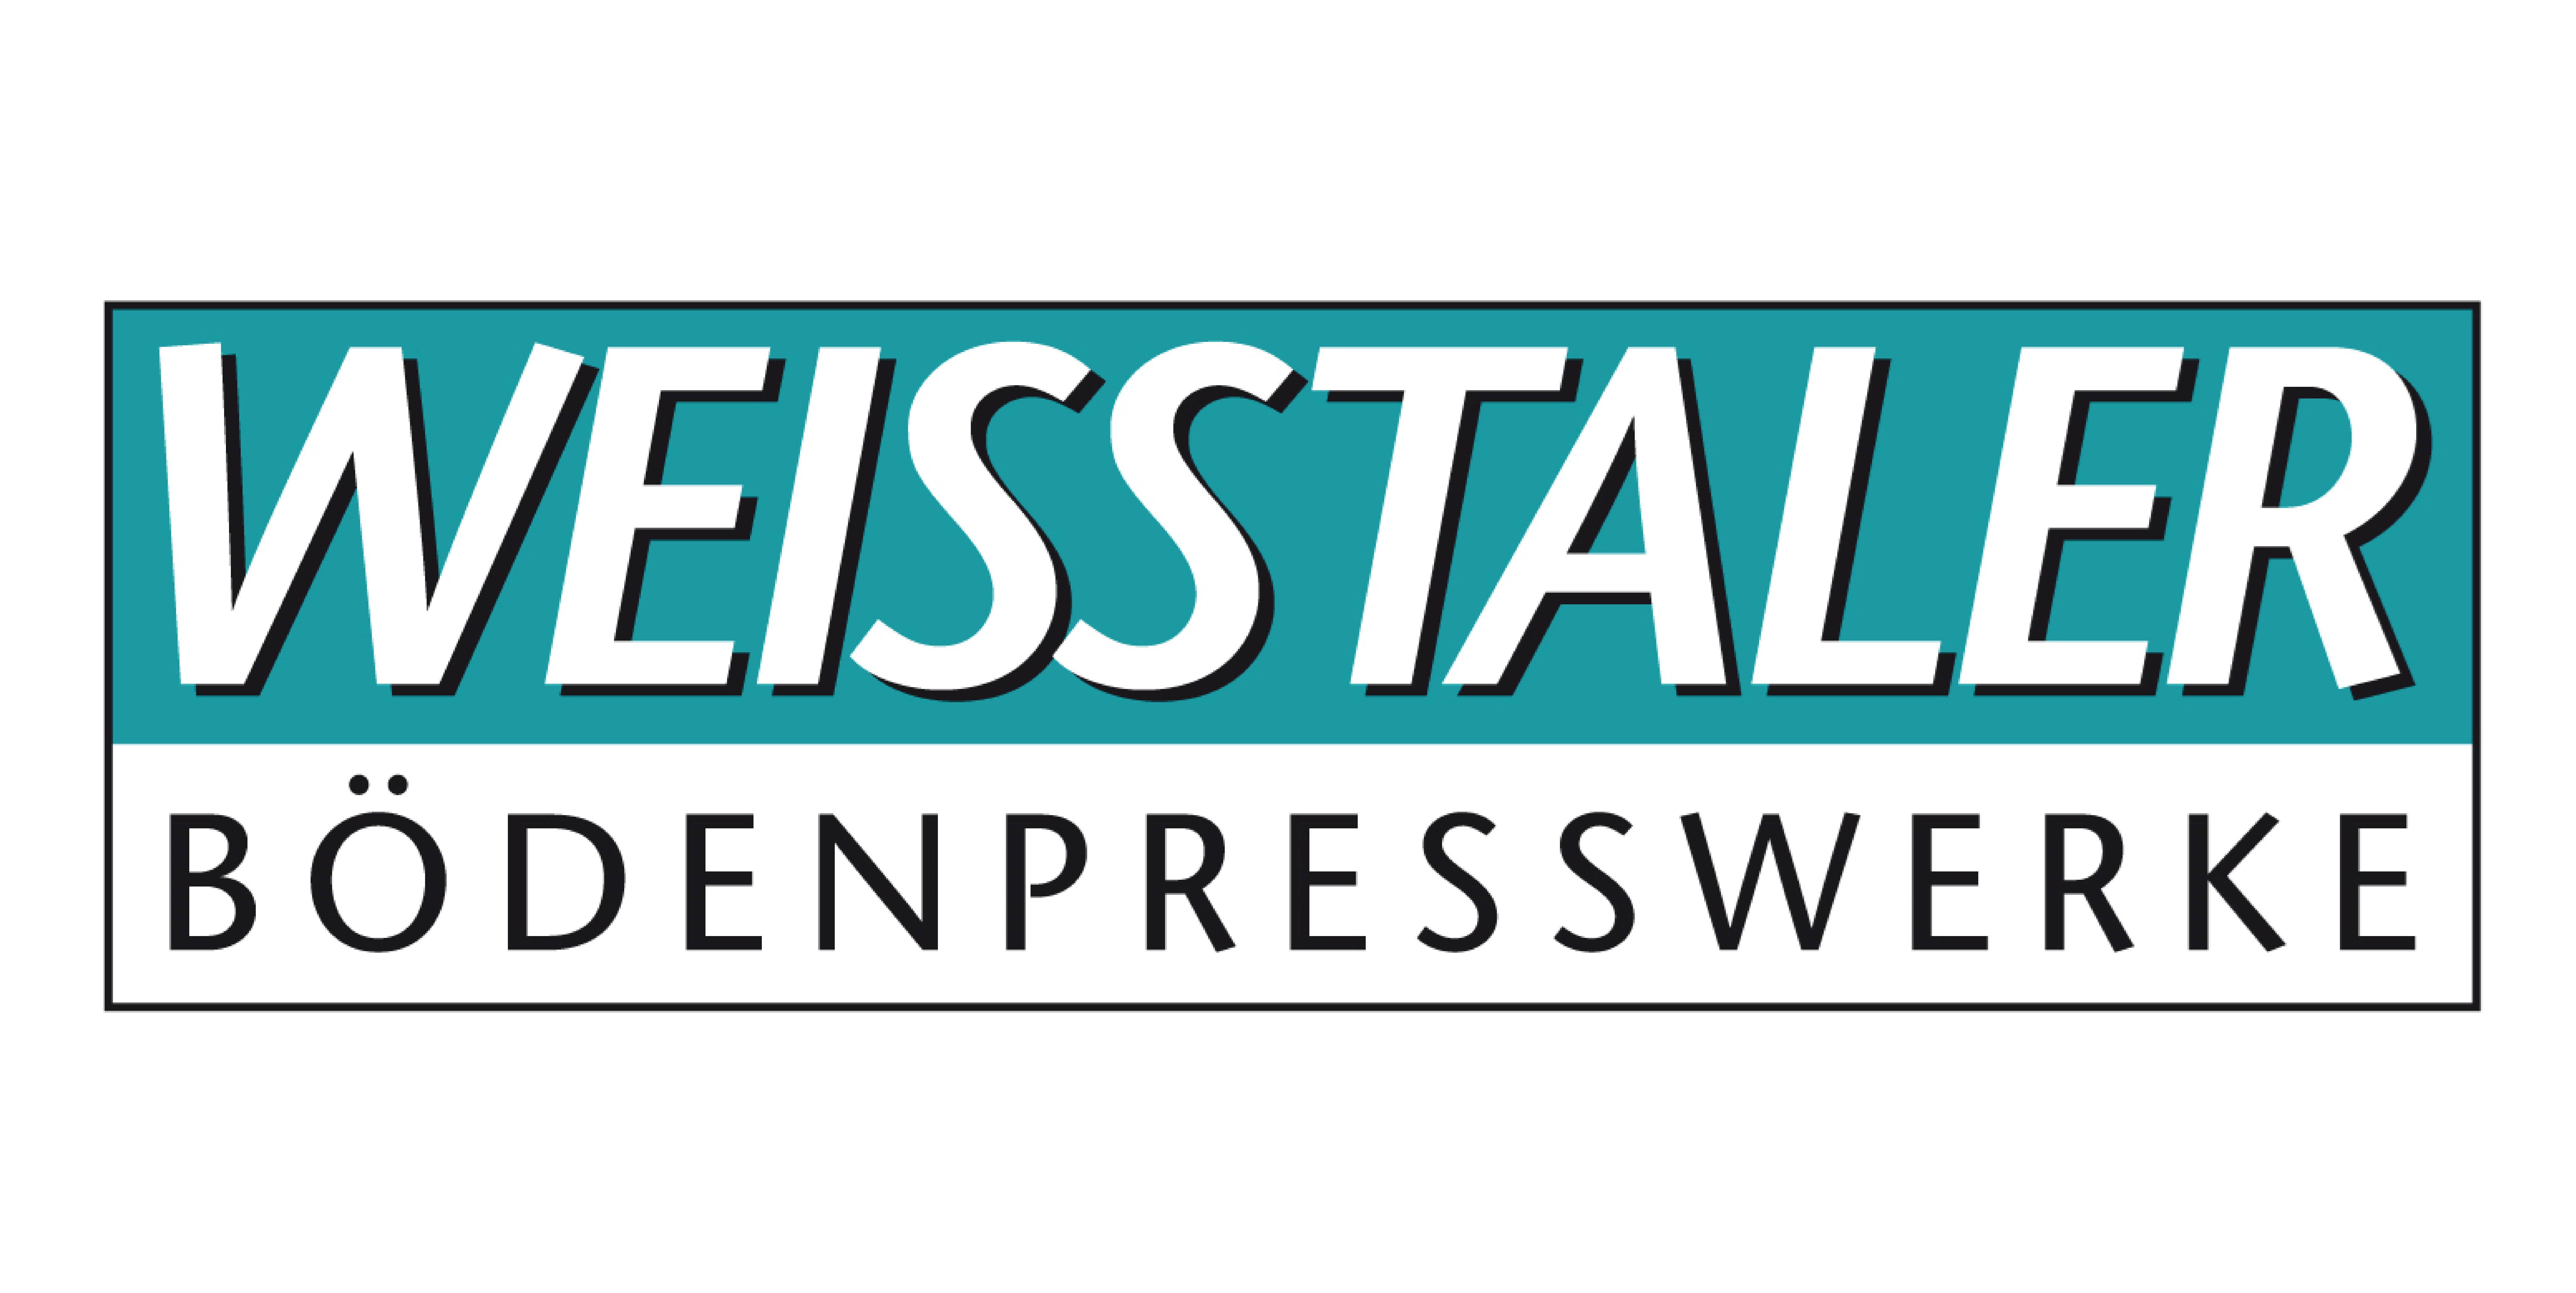 WEISSTALER Bödenpresswerke GmbH